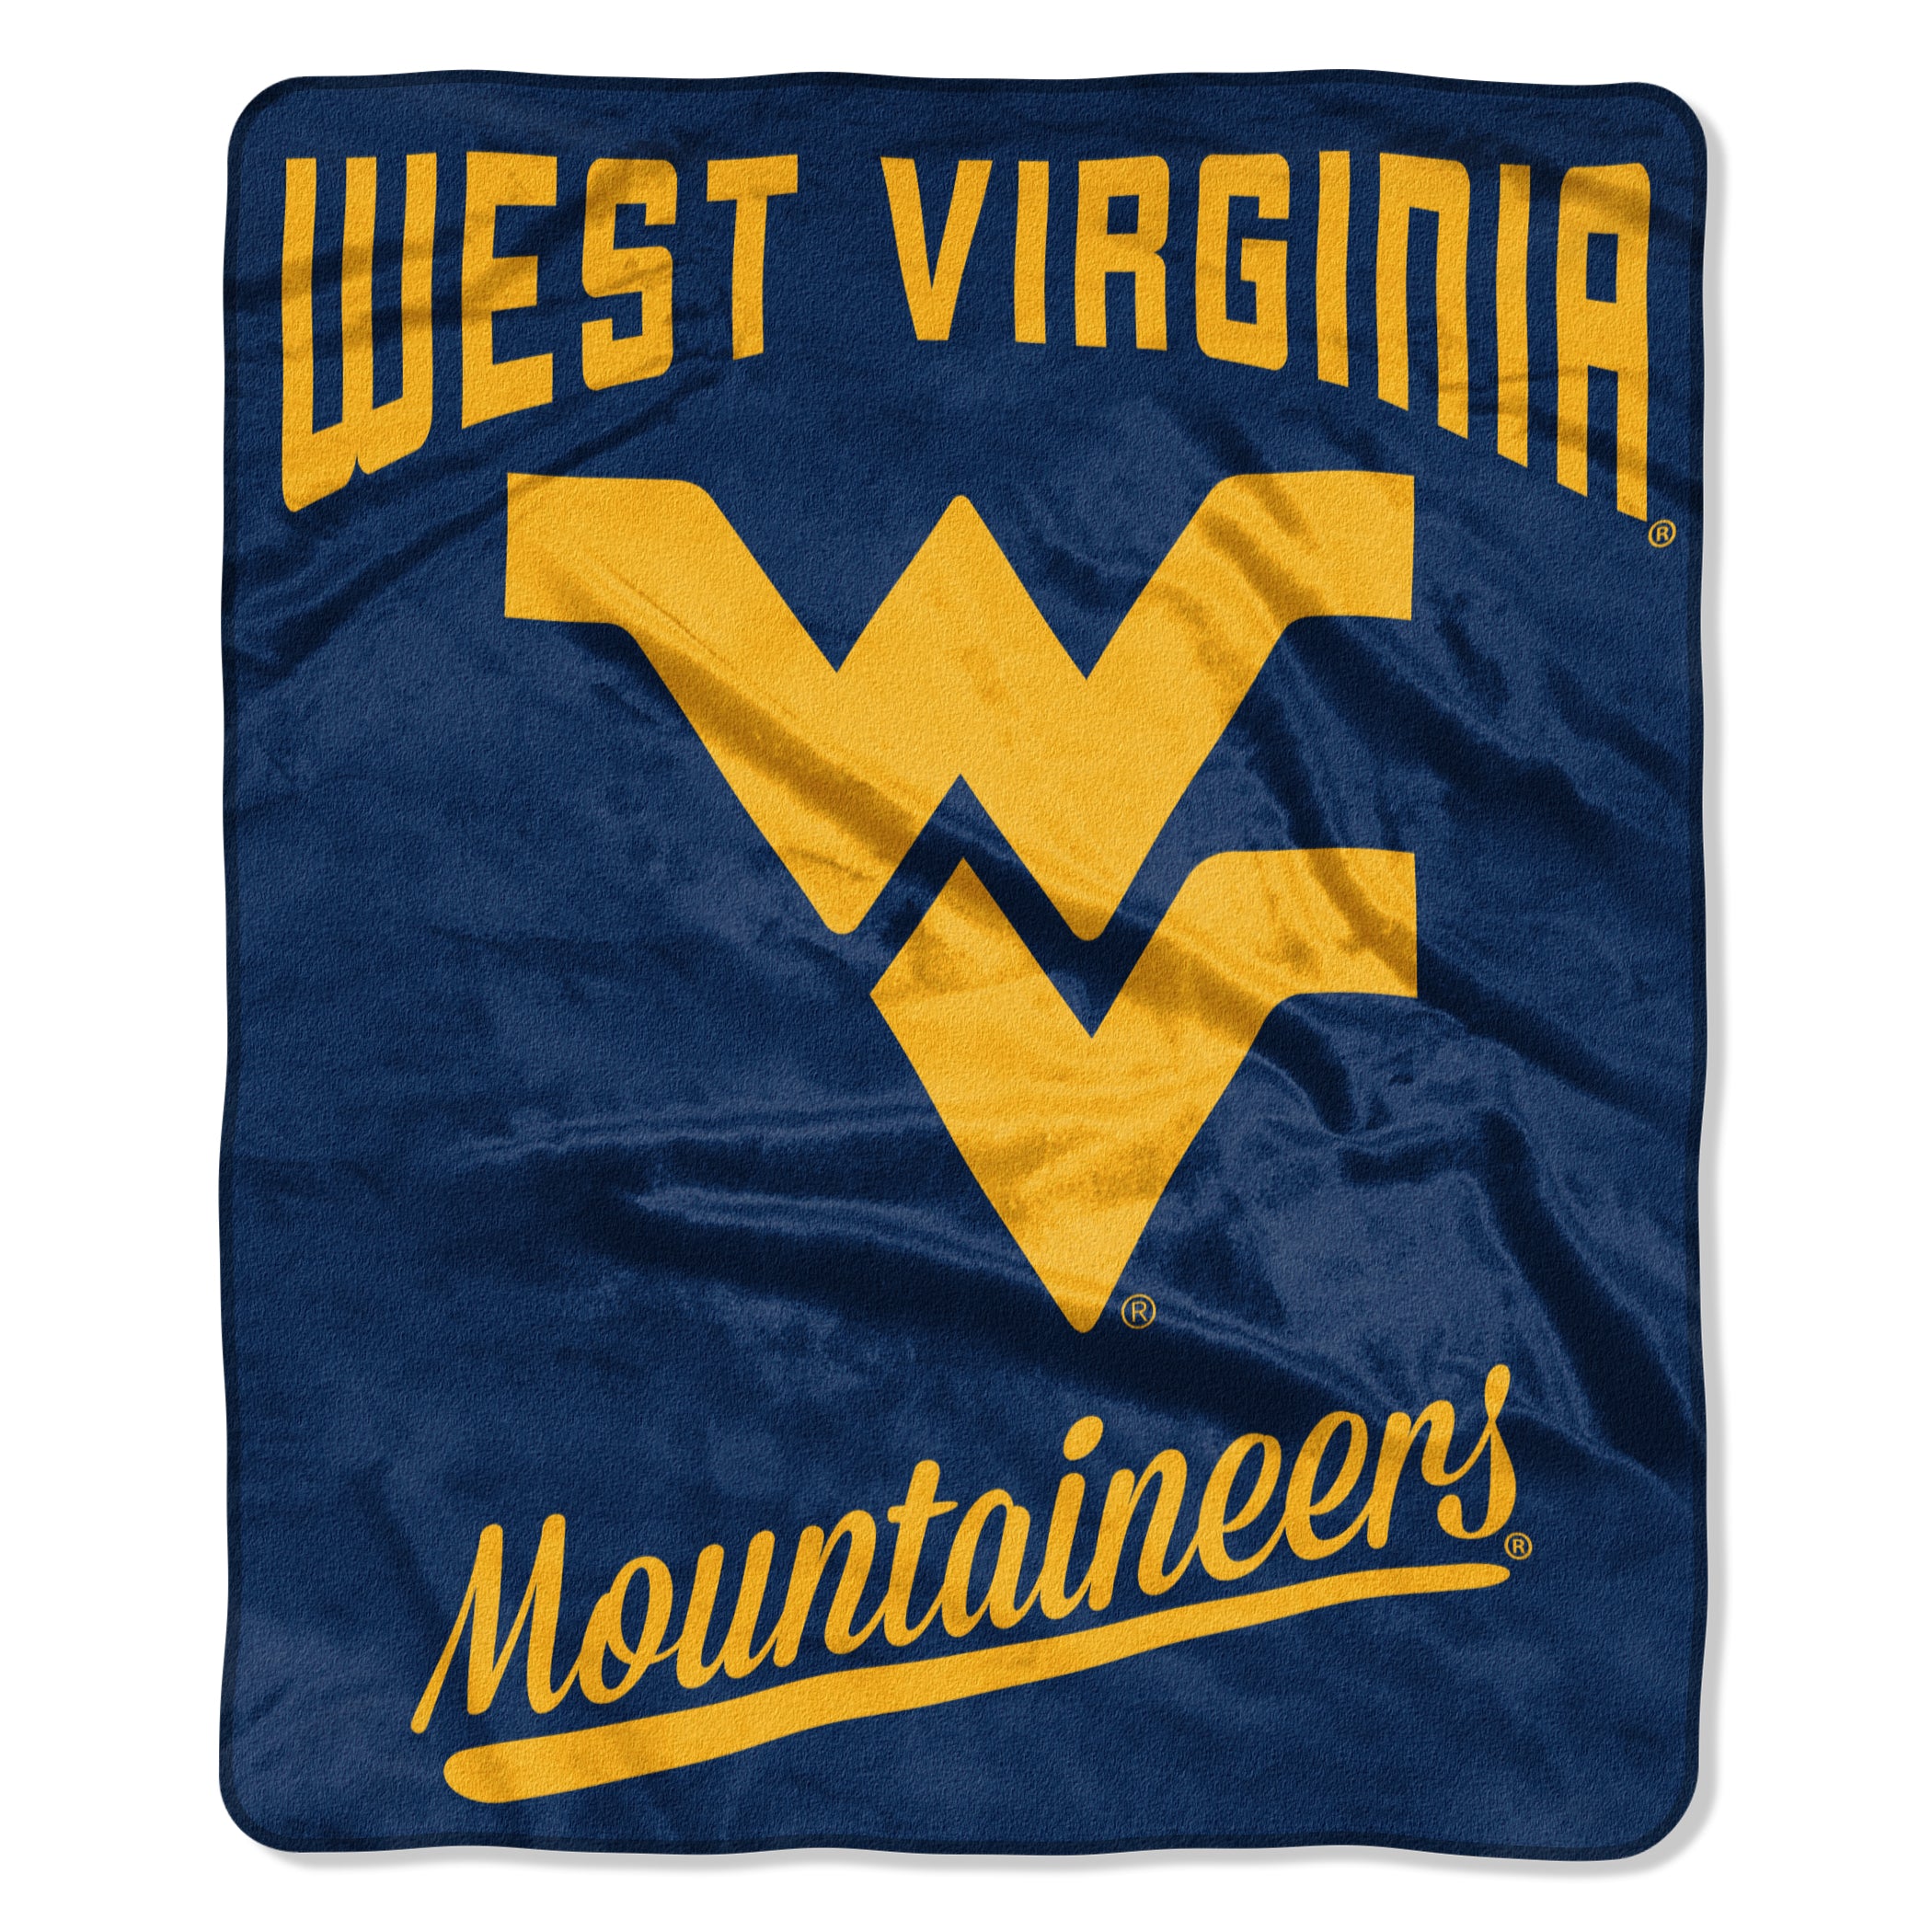 West Virginia Mountaineers Blanket 50x60 Raschel Alumni Design